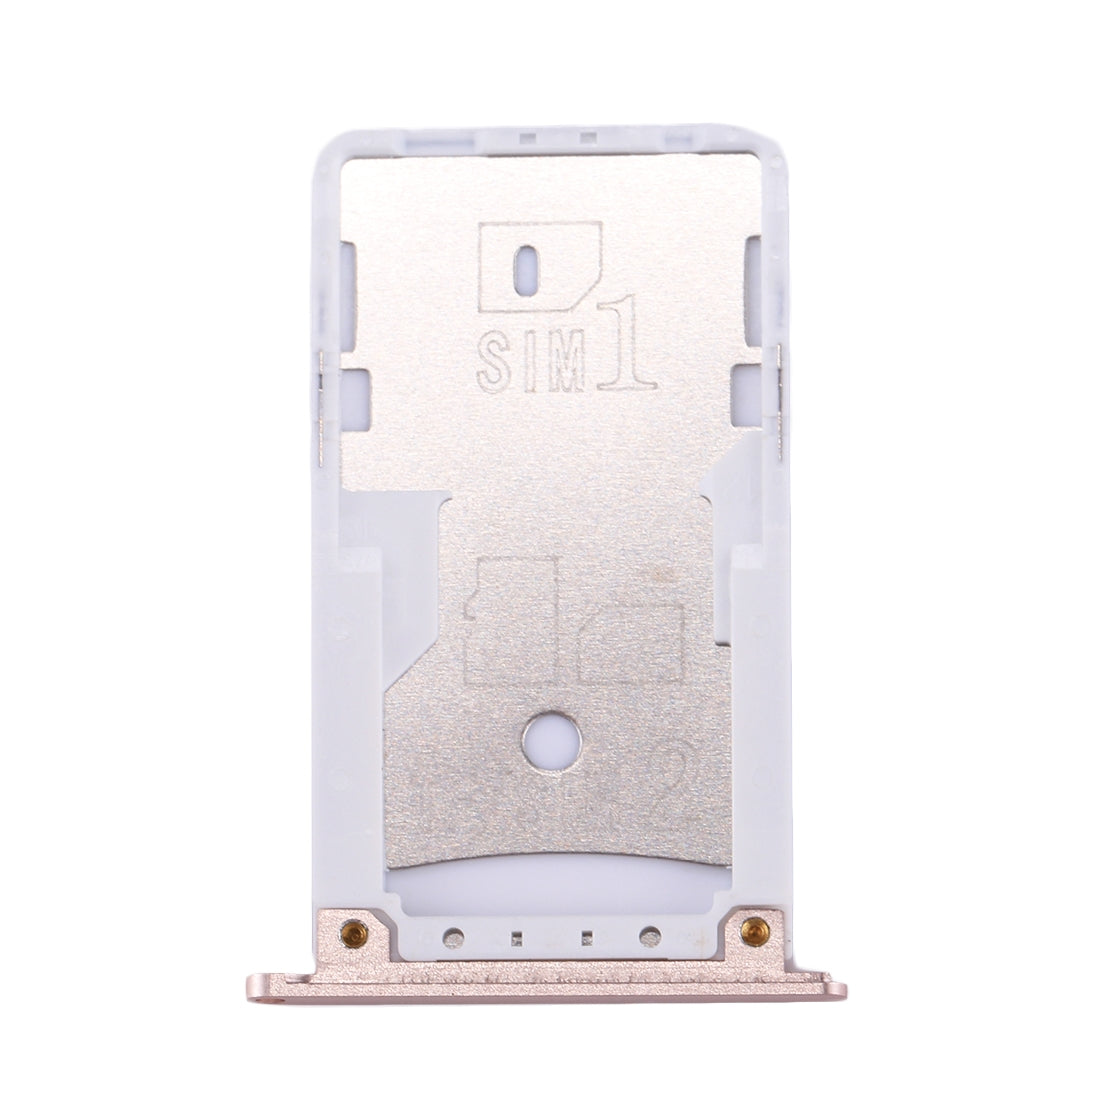 SIM Holder Tray Micro SIM Xiaomi Redmi Pro Gold